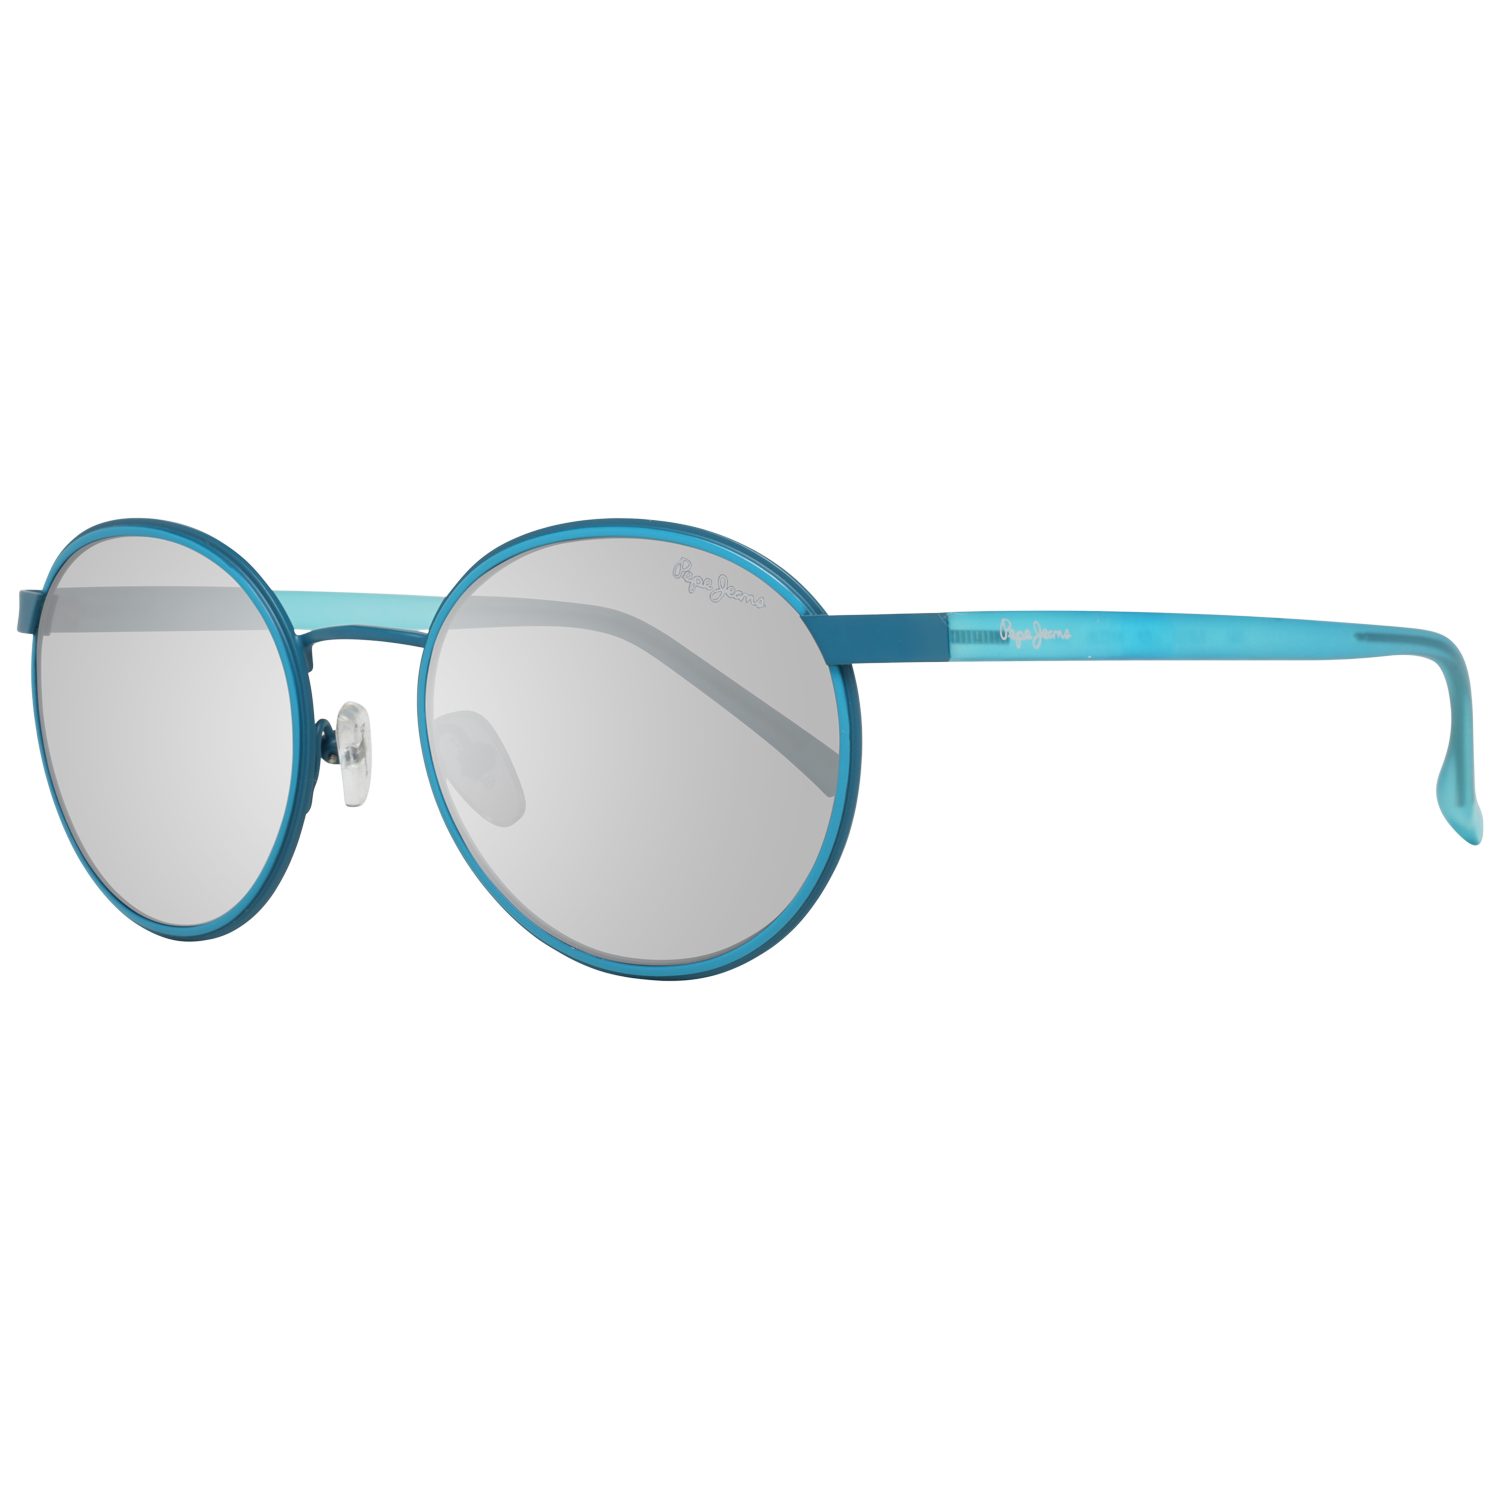 Pepe Jeans Sonnenbrille »Pepe Jeans Sonnenbrille PJ5122 C1 51 Sunglasses  Farbe« online kaufen | OTTO